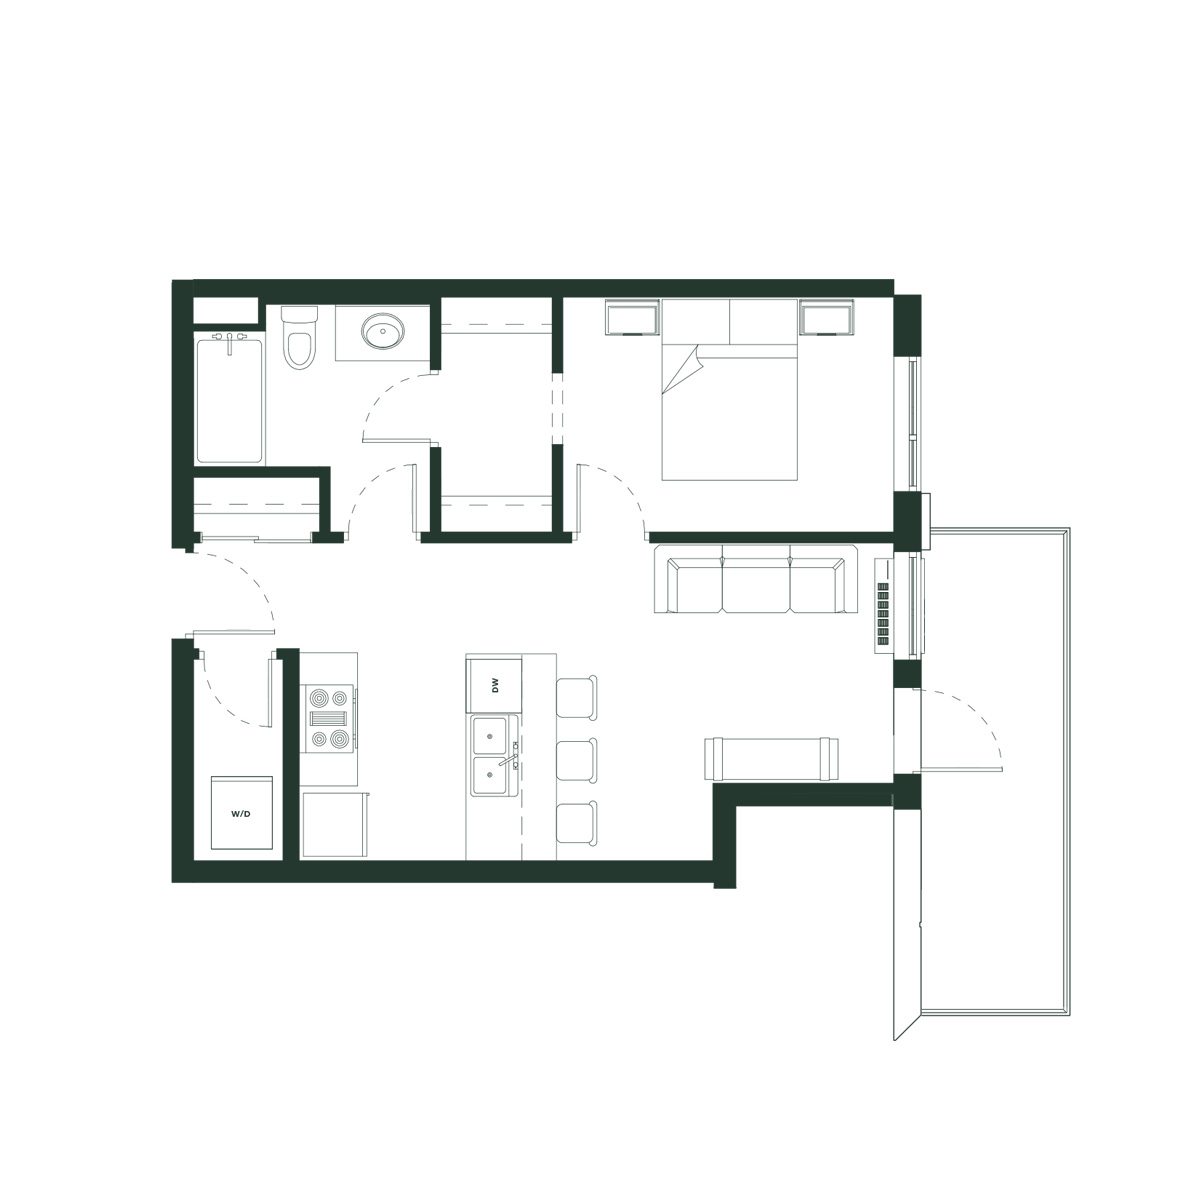 "Dasiy" - 583 sq ft Apartment in Edmonton